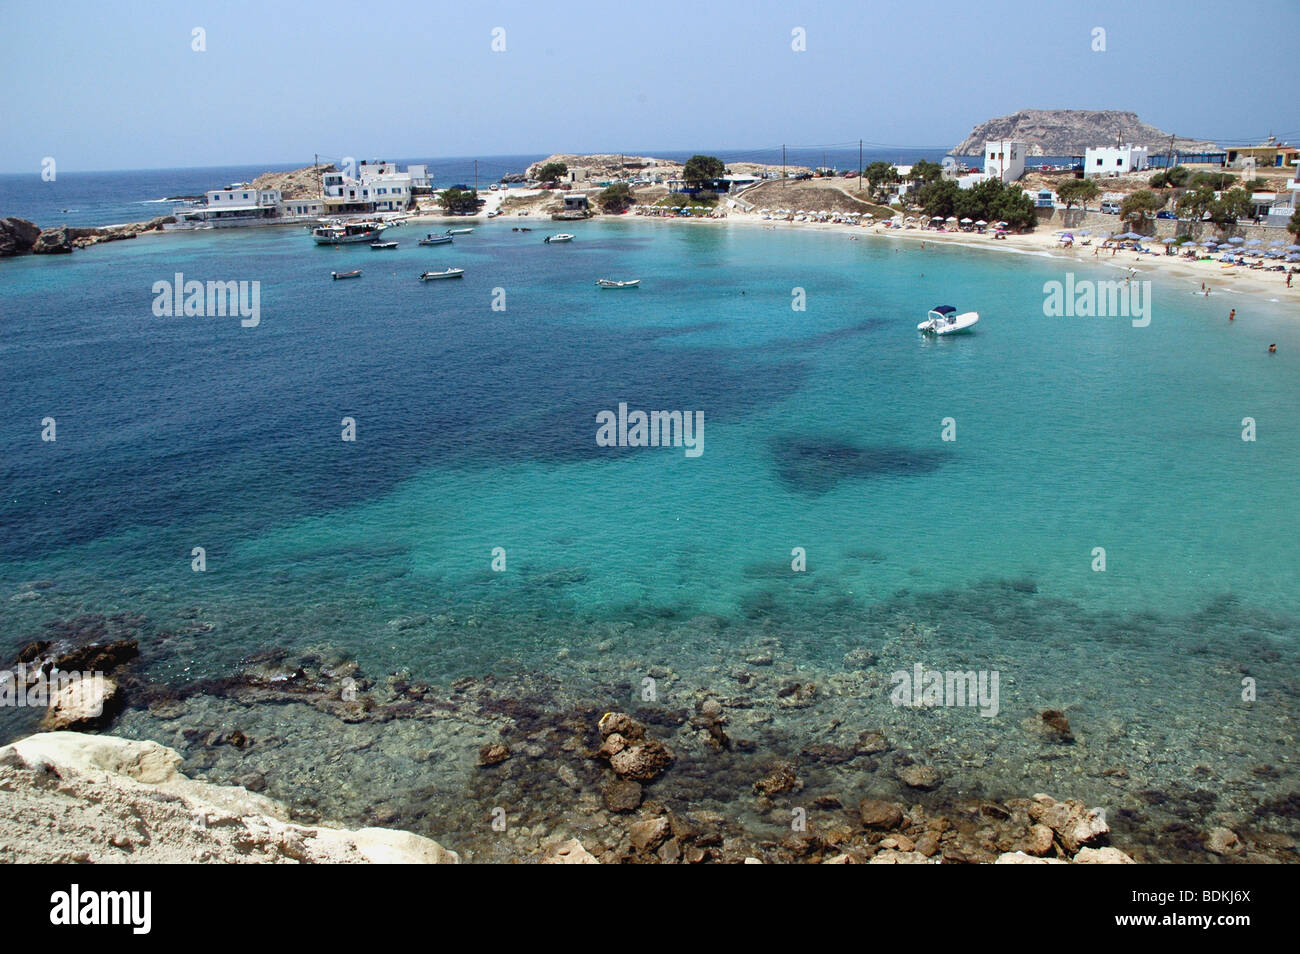 Piccole imbarcazioni in una laguna cristallina accanto alla spiaggia di Lefkos sull'isola greca di Karpathos, nel Dodecanneso catena di isole, Grecia. Foto Stock